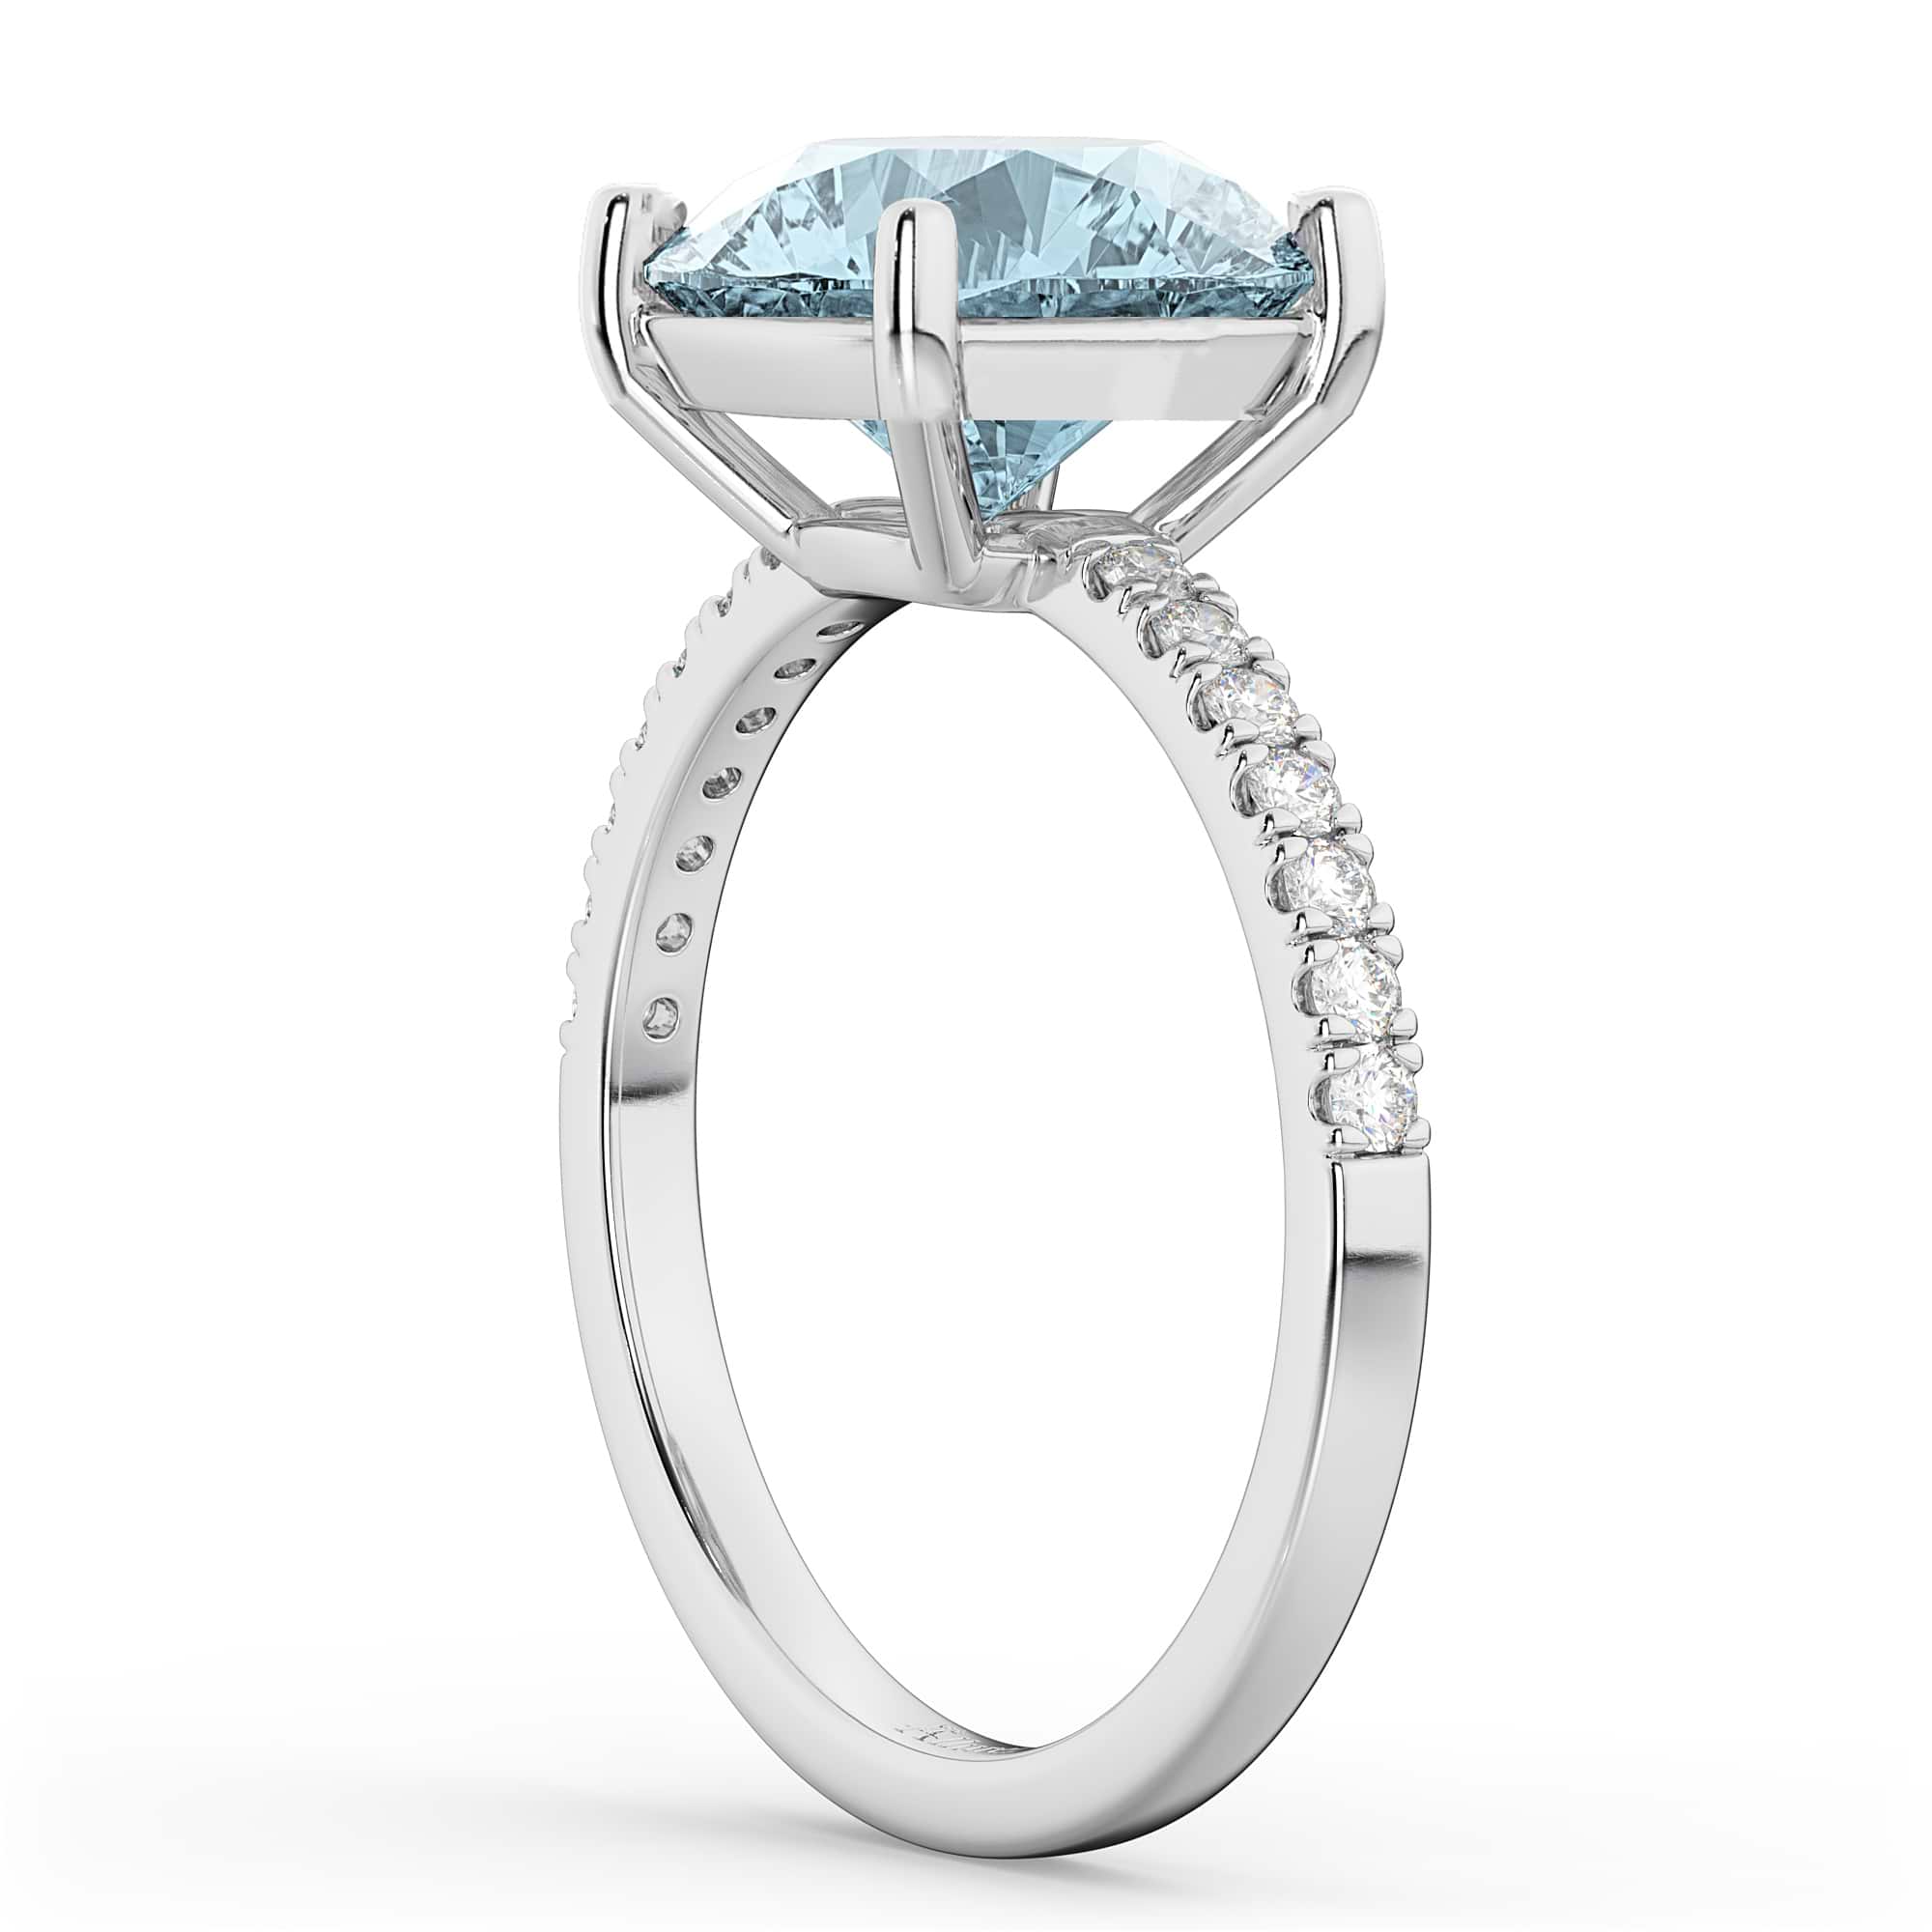 Aquamarine & Diamond Engagement Ring 14K White Gold 2.41ct